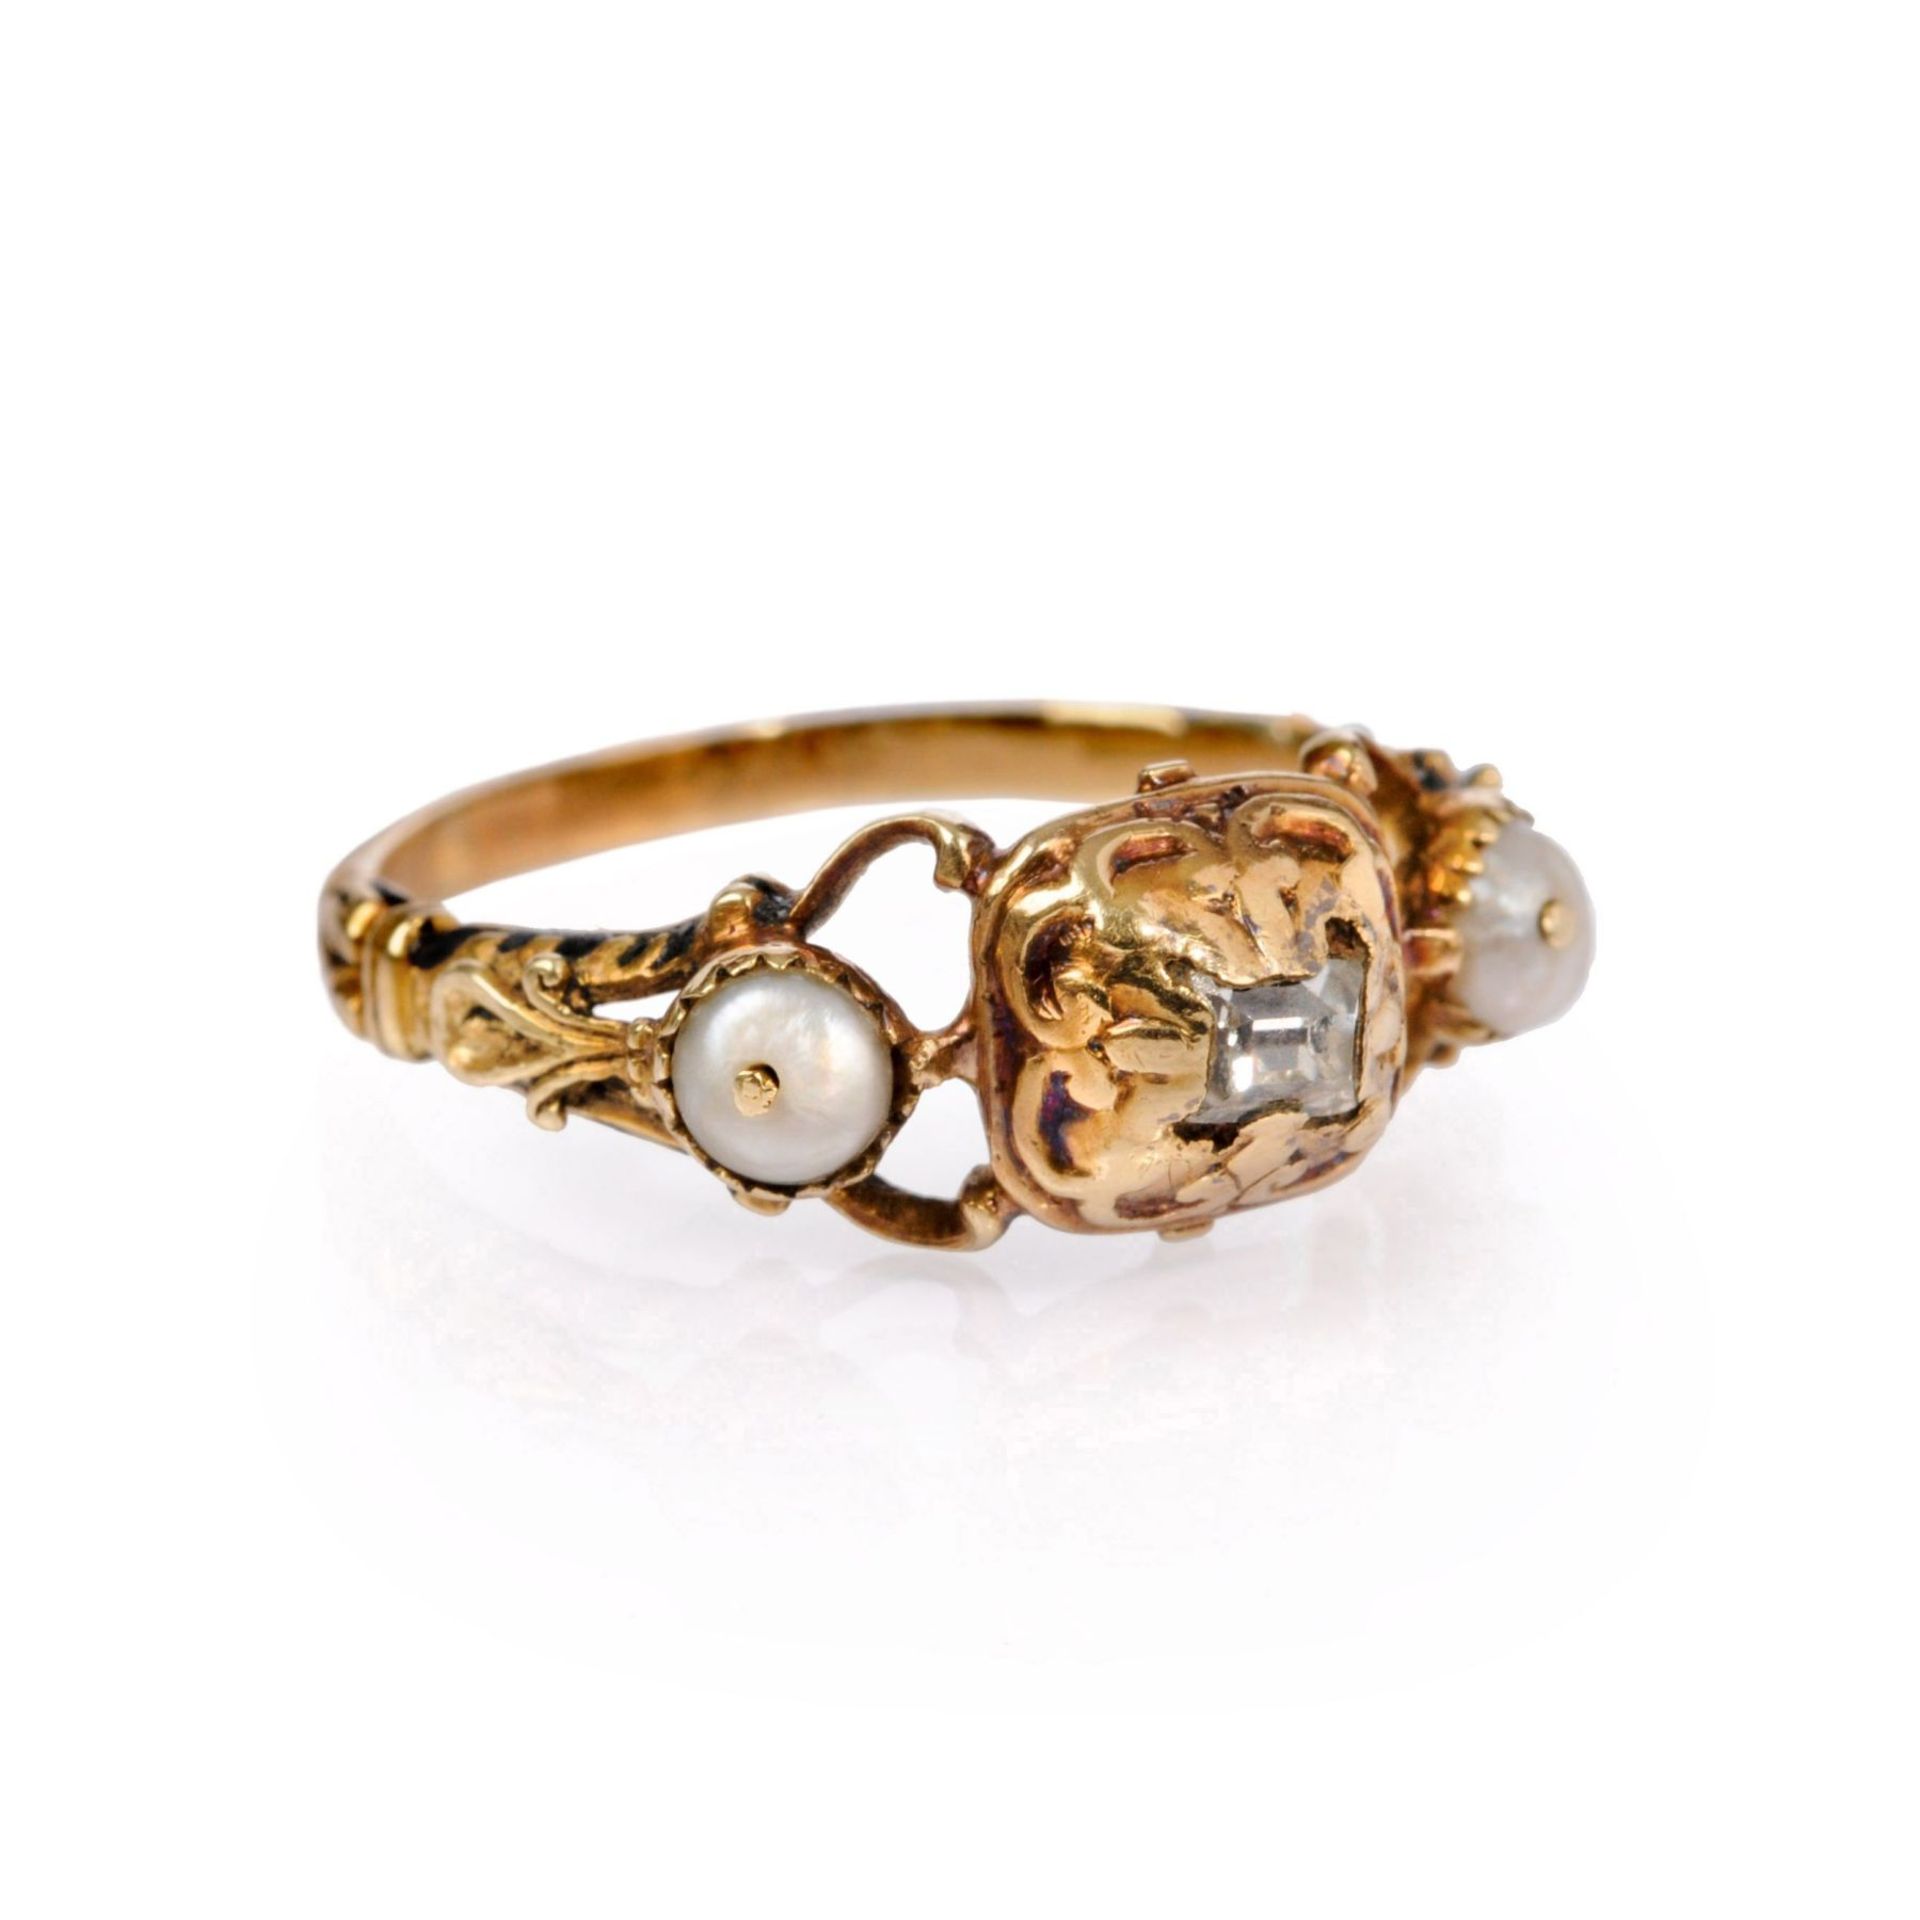 Renaissance-Ring mit Diamant und Perlen. Westeuropäisch. Wohl spätes 16. Jh./Frühes 17. Jh.14K